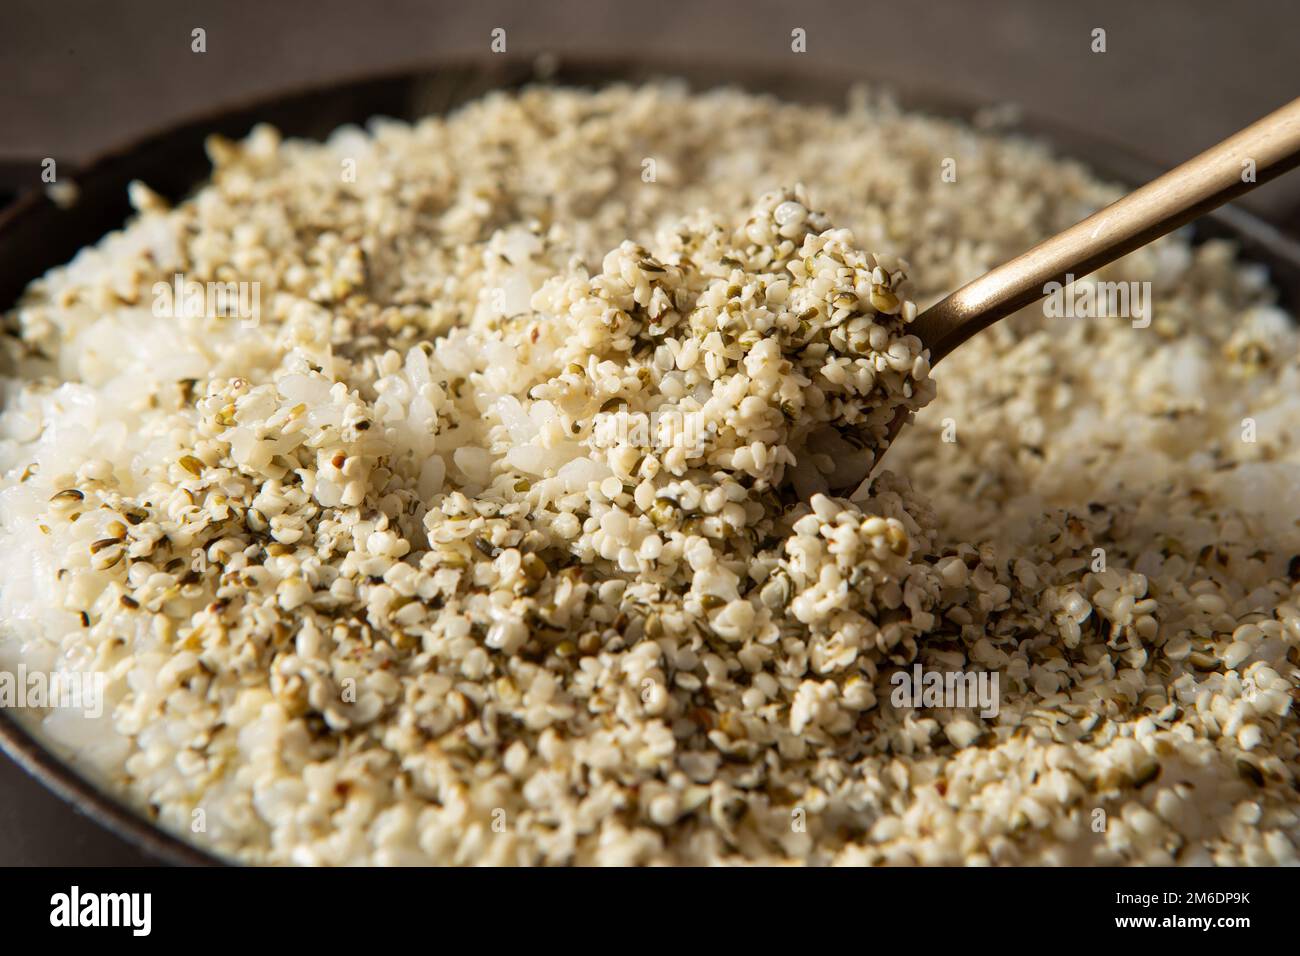 https://c8.alamy.com/compes/2m6dp9k/semillas-de-canamo-en-arroz-delicioso-arroz-caldero-recien-cocinado-2m6dp9k.jpg